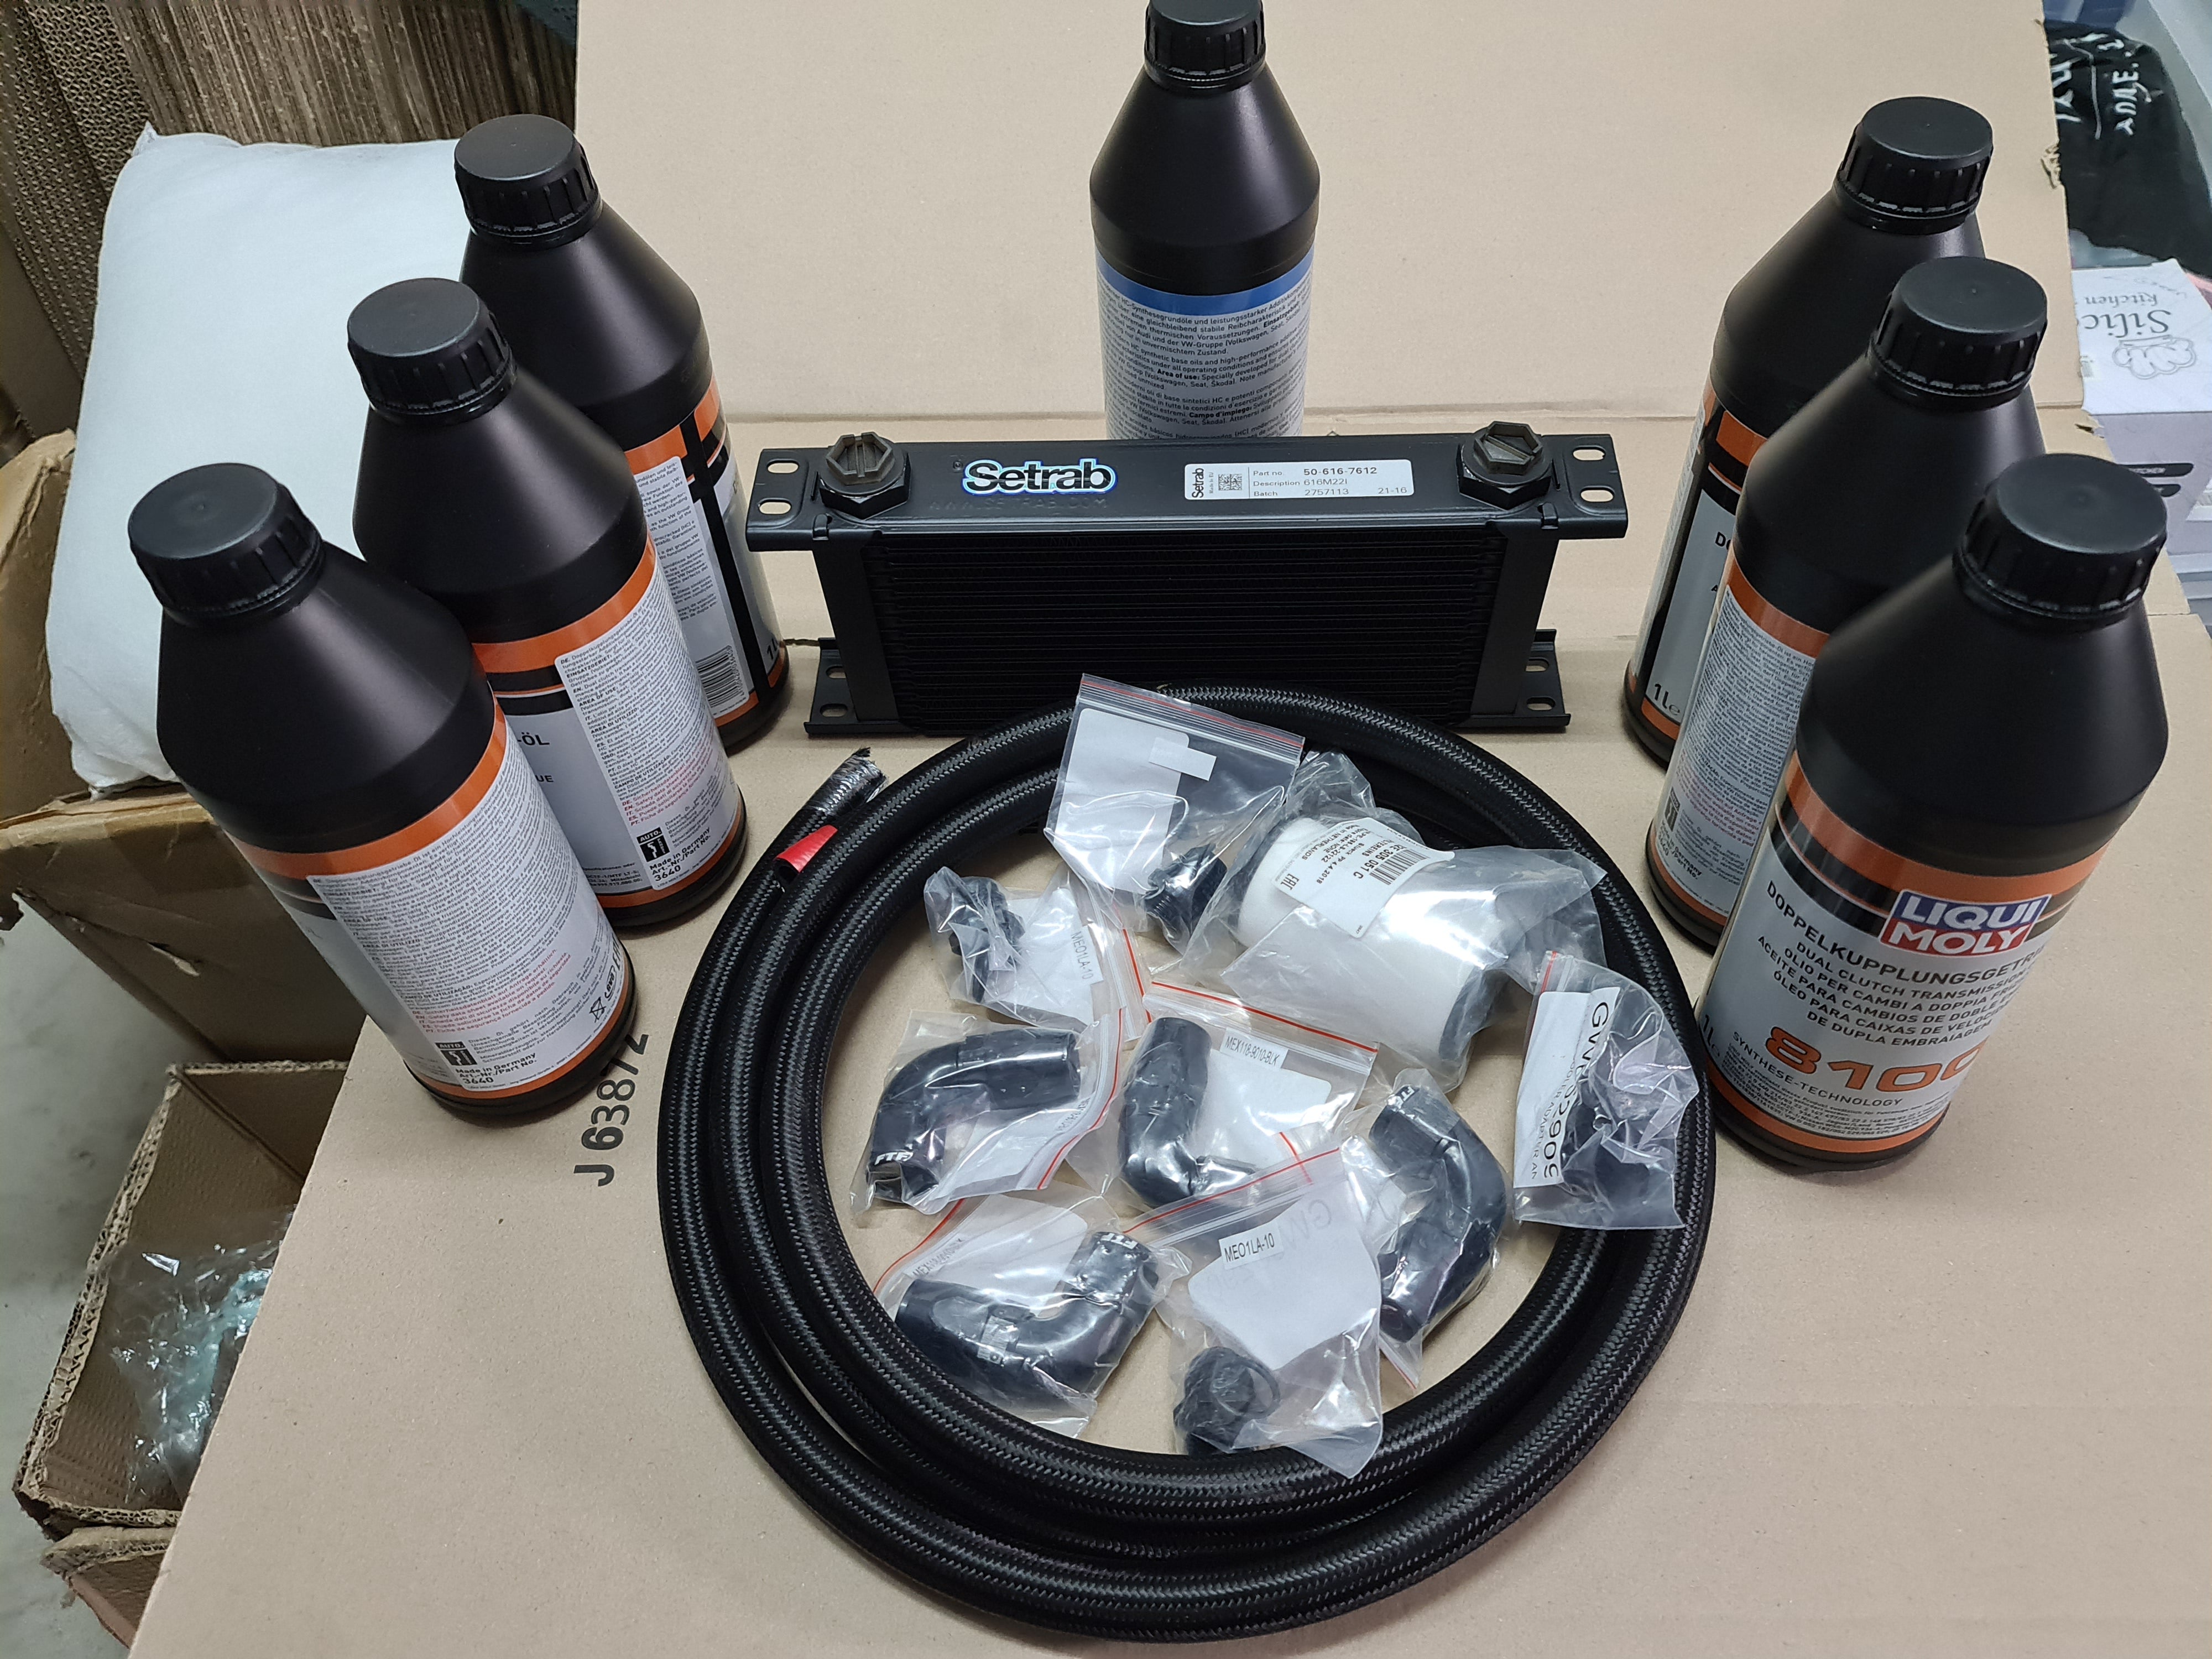 Dq250 oil cooler kit